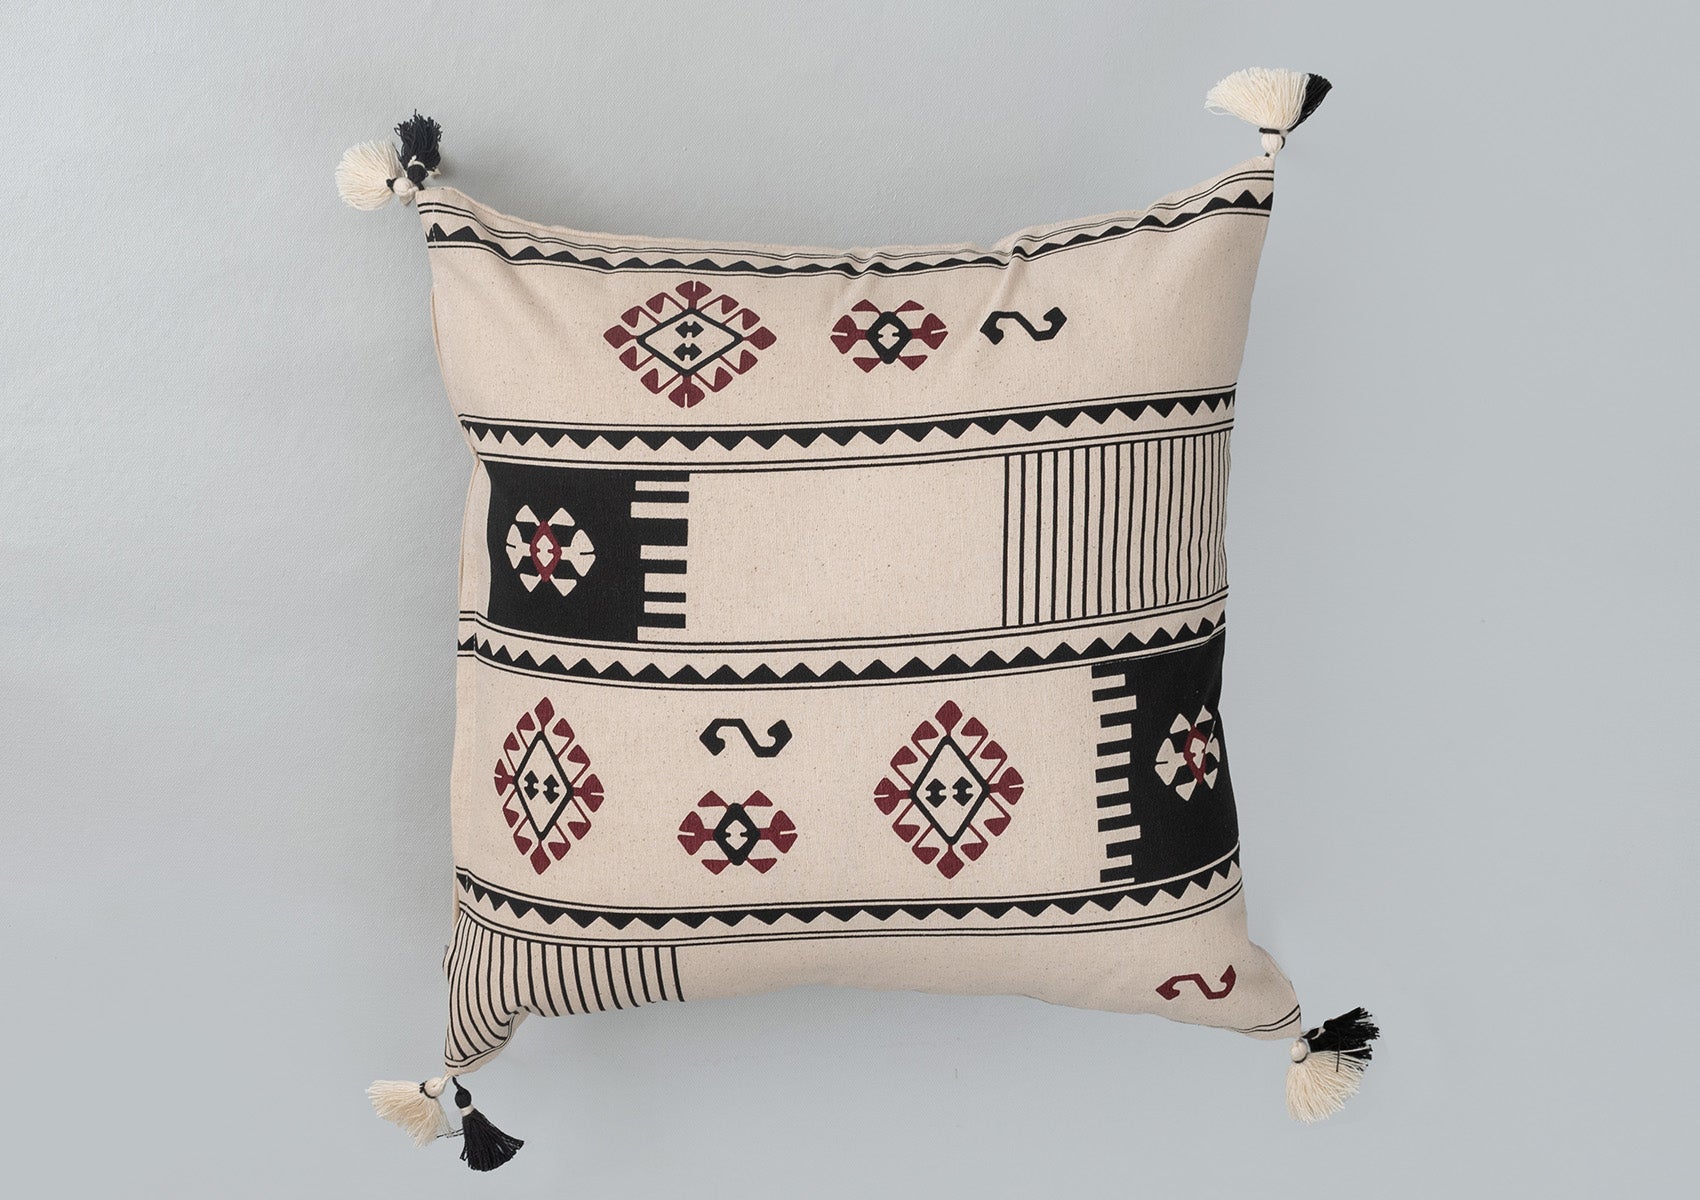 Saga 100% cotton boho geometric cushion cover combo set for sofa- Black and off- white